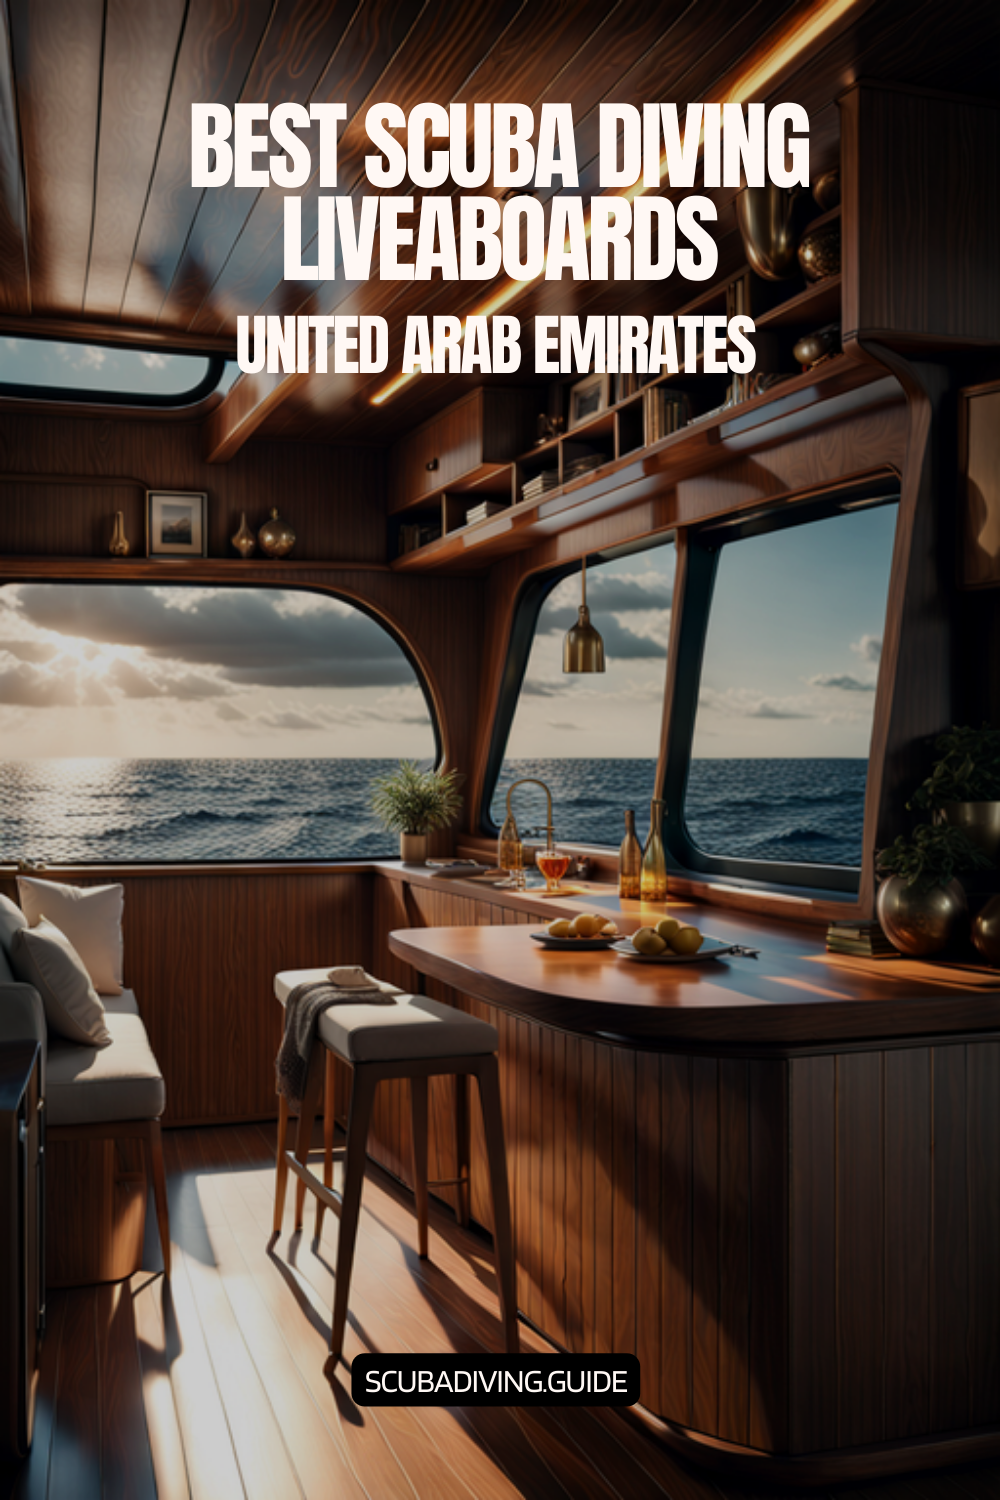 United Arab Emirates Liveaboards